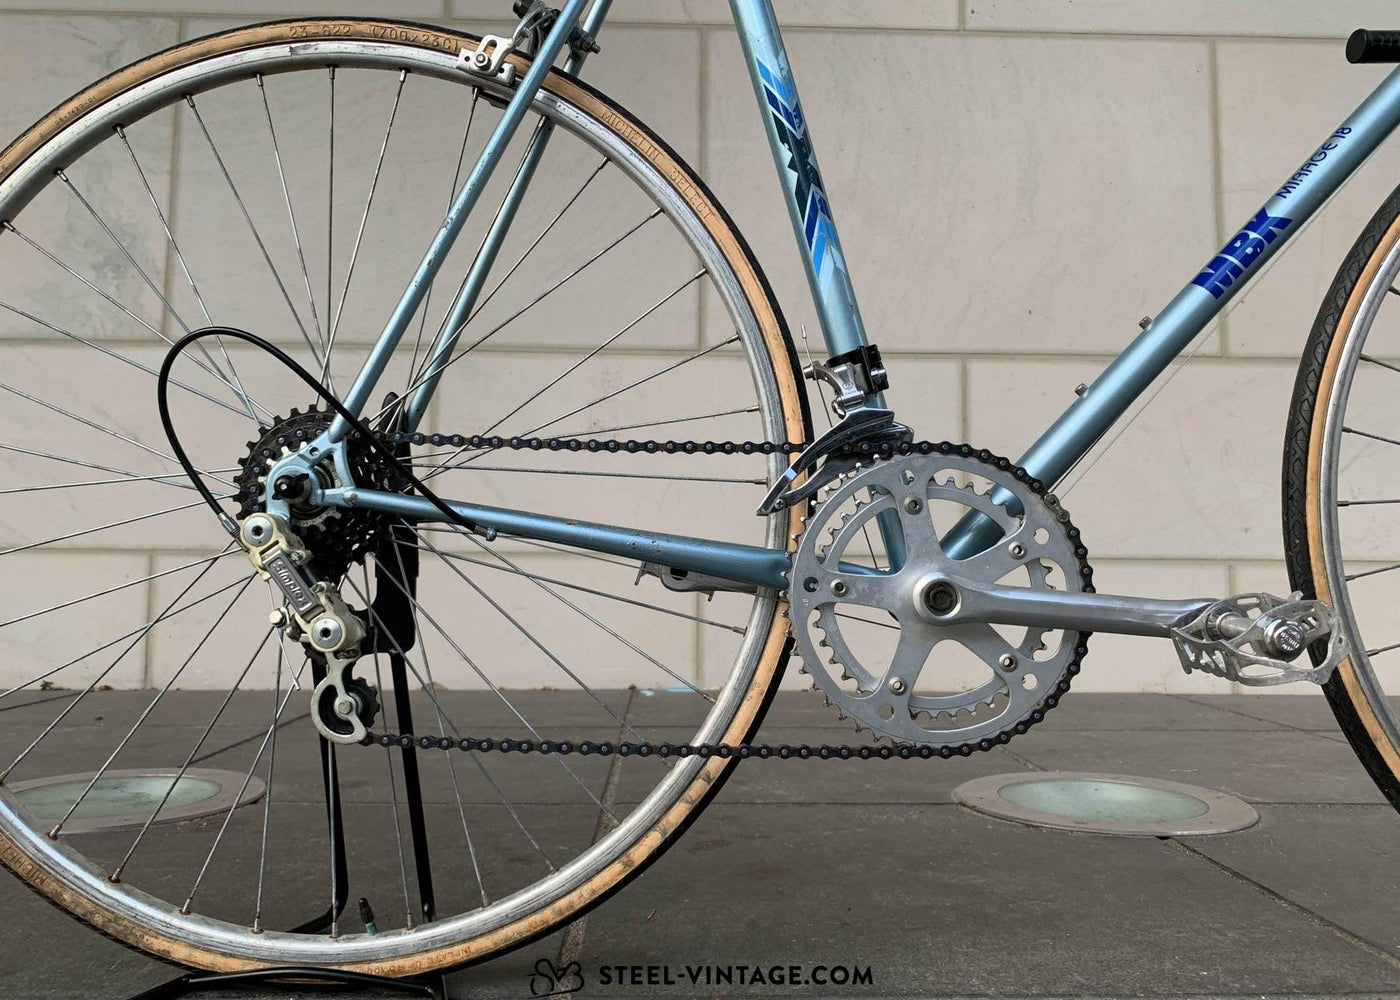 MBK Mirage Vintage Road Bicycle - Steel Vintage Bikes